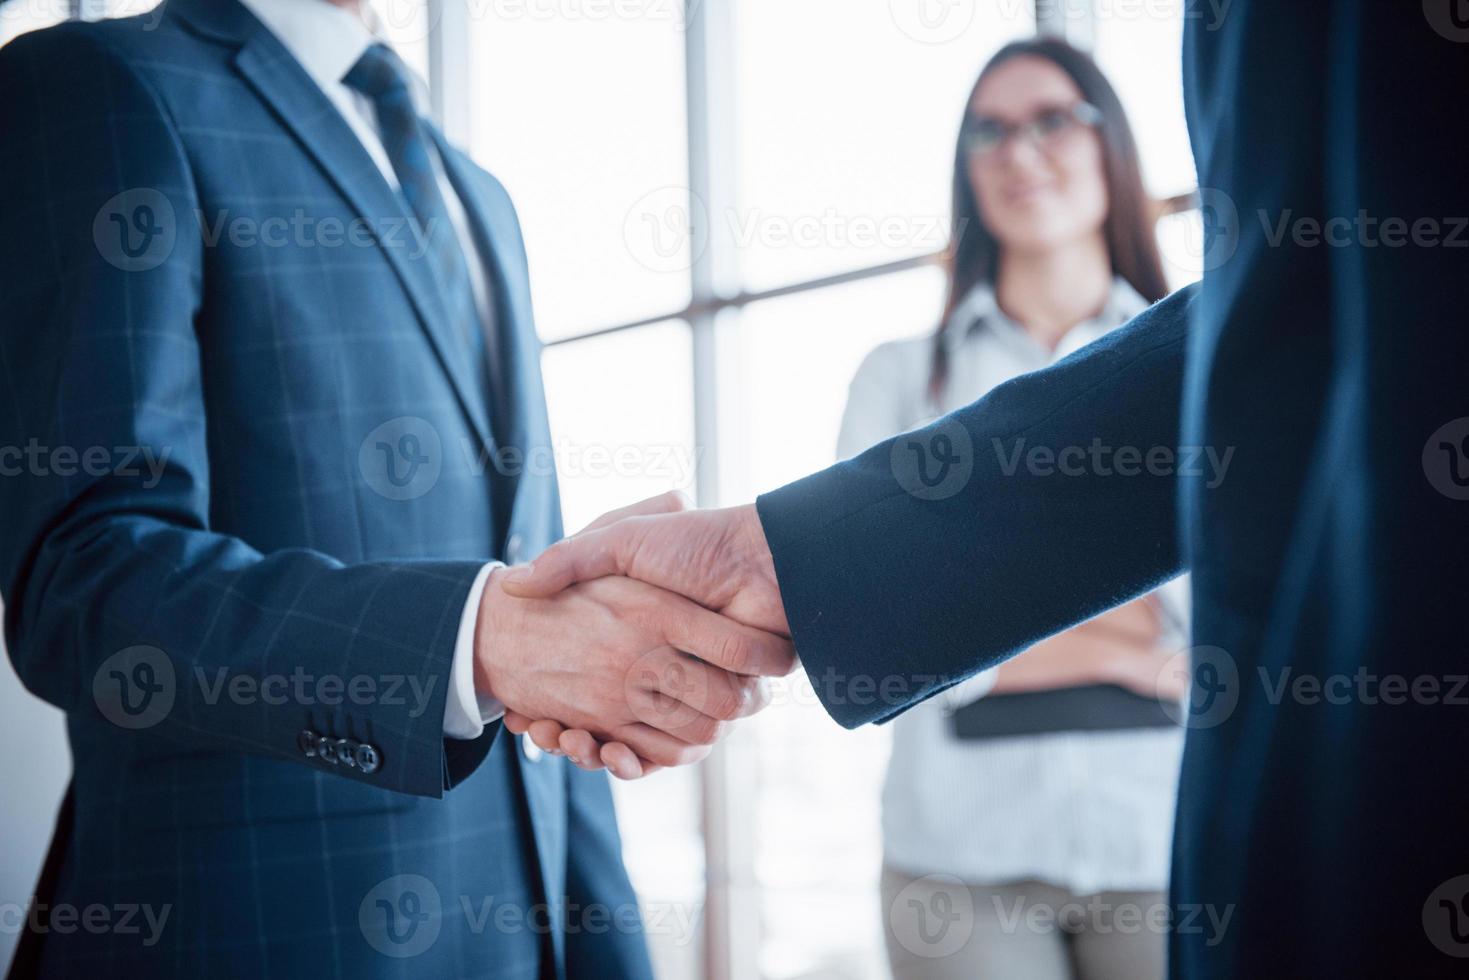 uomini d'affari si stringono la mano, finendo un incontro foto